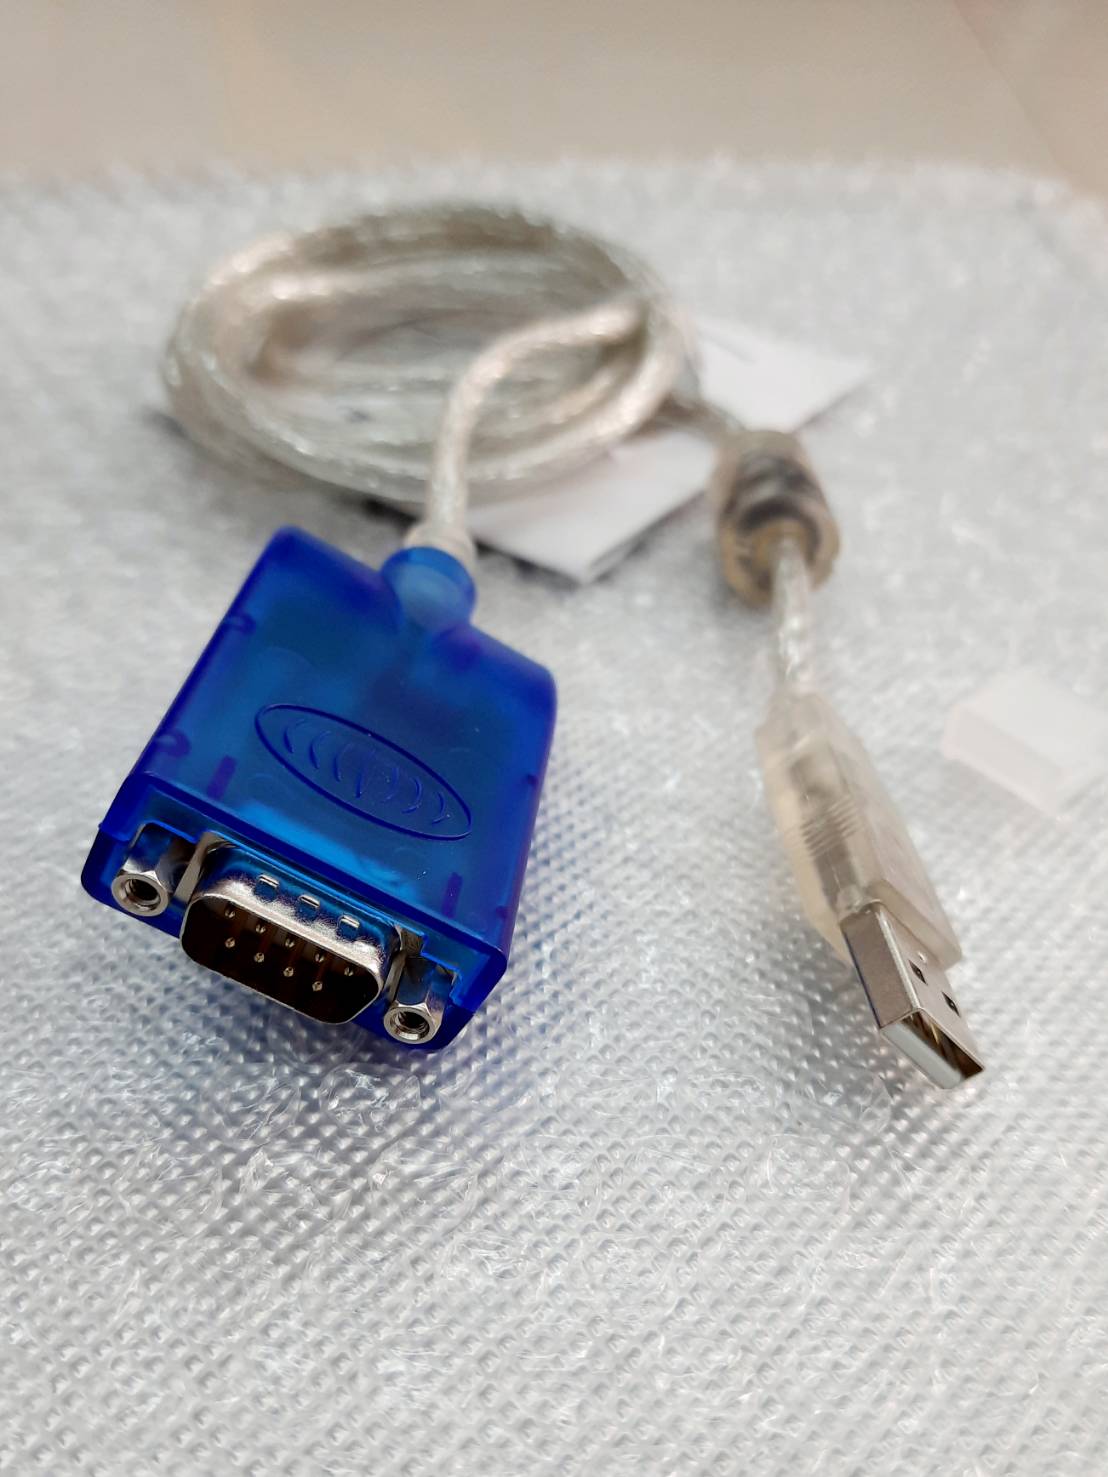 USB 2.0 TO RS232 รองรับ วินโด้ 10 สายยาว 1.8  เมตร รองรับทุกเครื่อง ใช้ง่าย มีแผ่นไดร์เวอร์ให้ในกล่อง แข็งแรงทนทาน